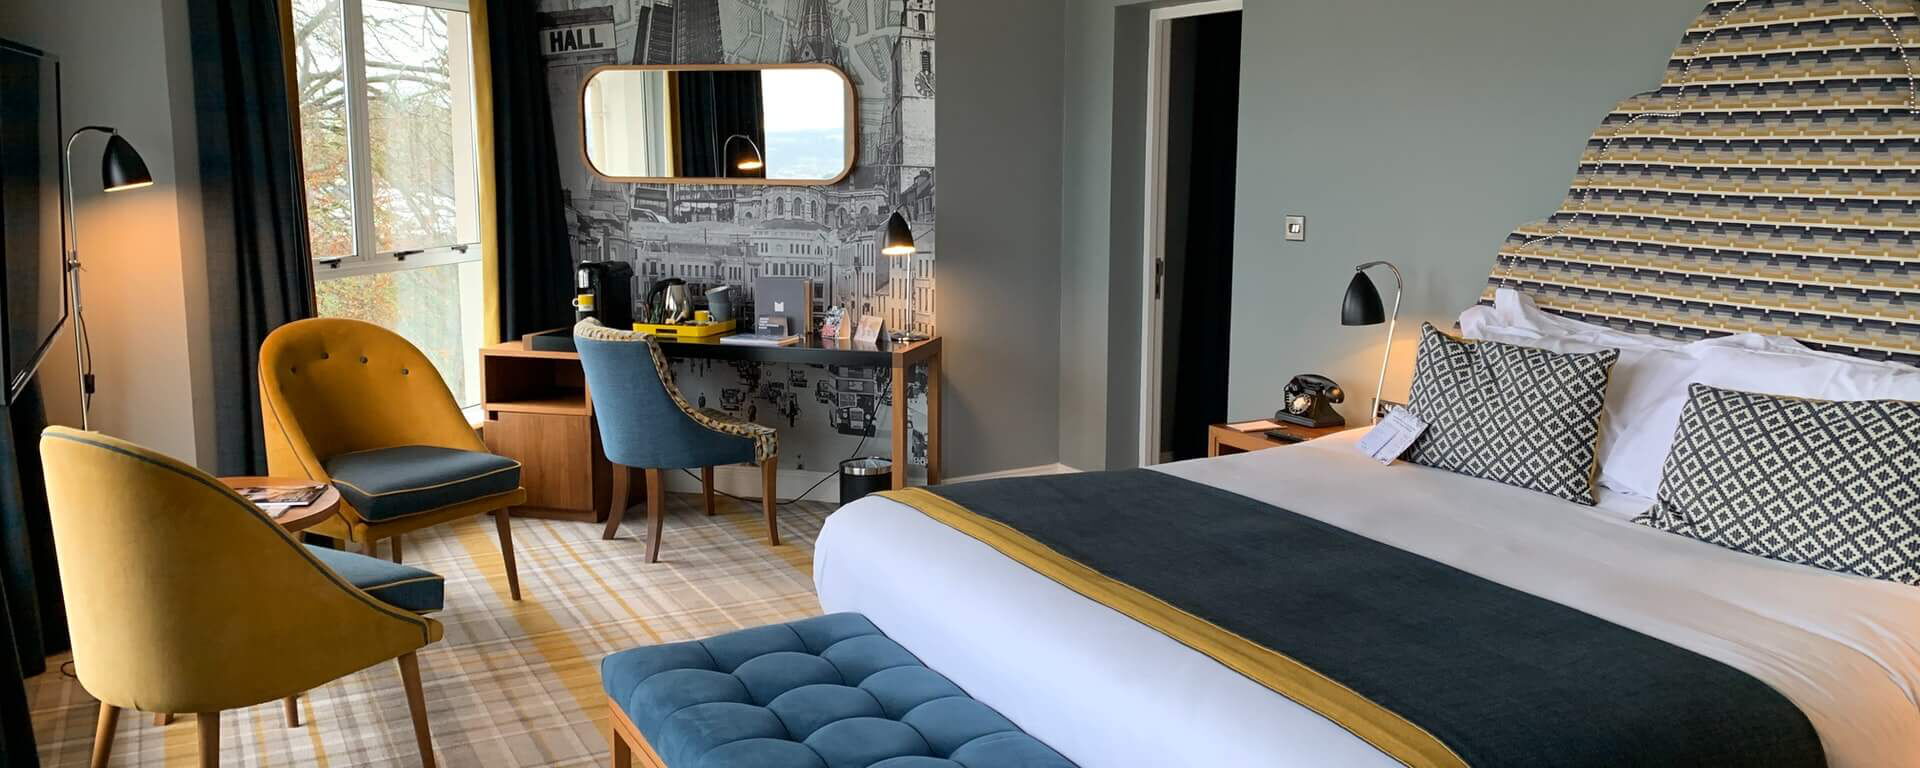 Stilvolles eingerichtetes Hotel Zimmer mit Bett